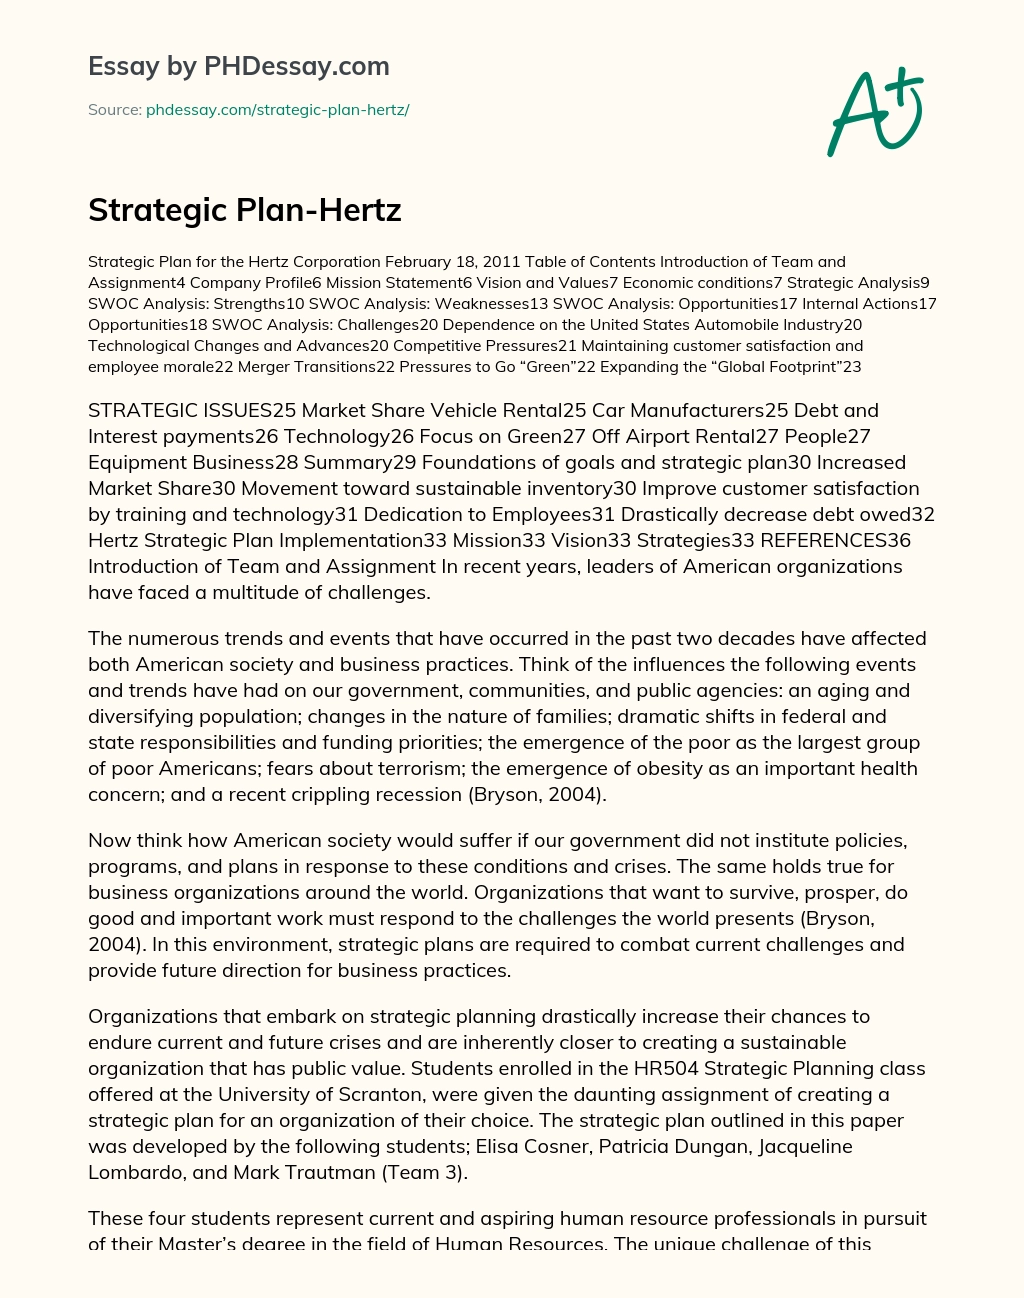 Strategic Plan-Hertz essay